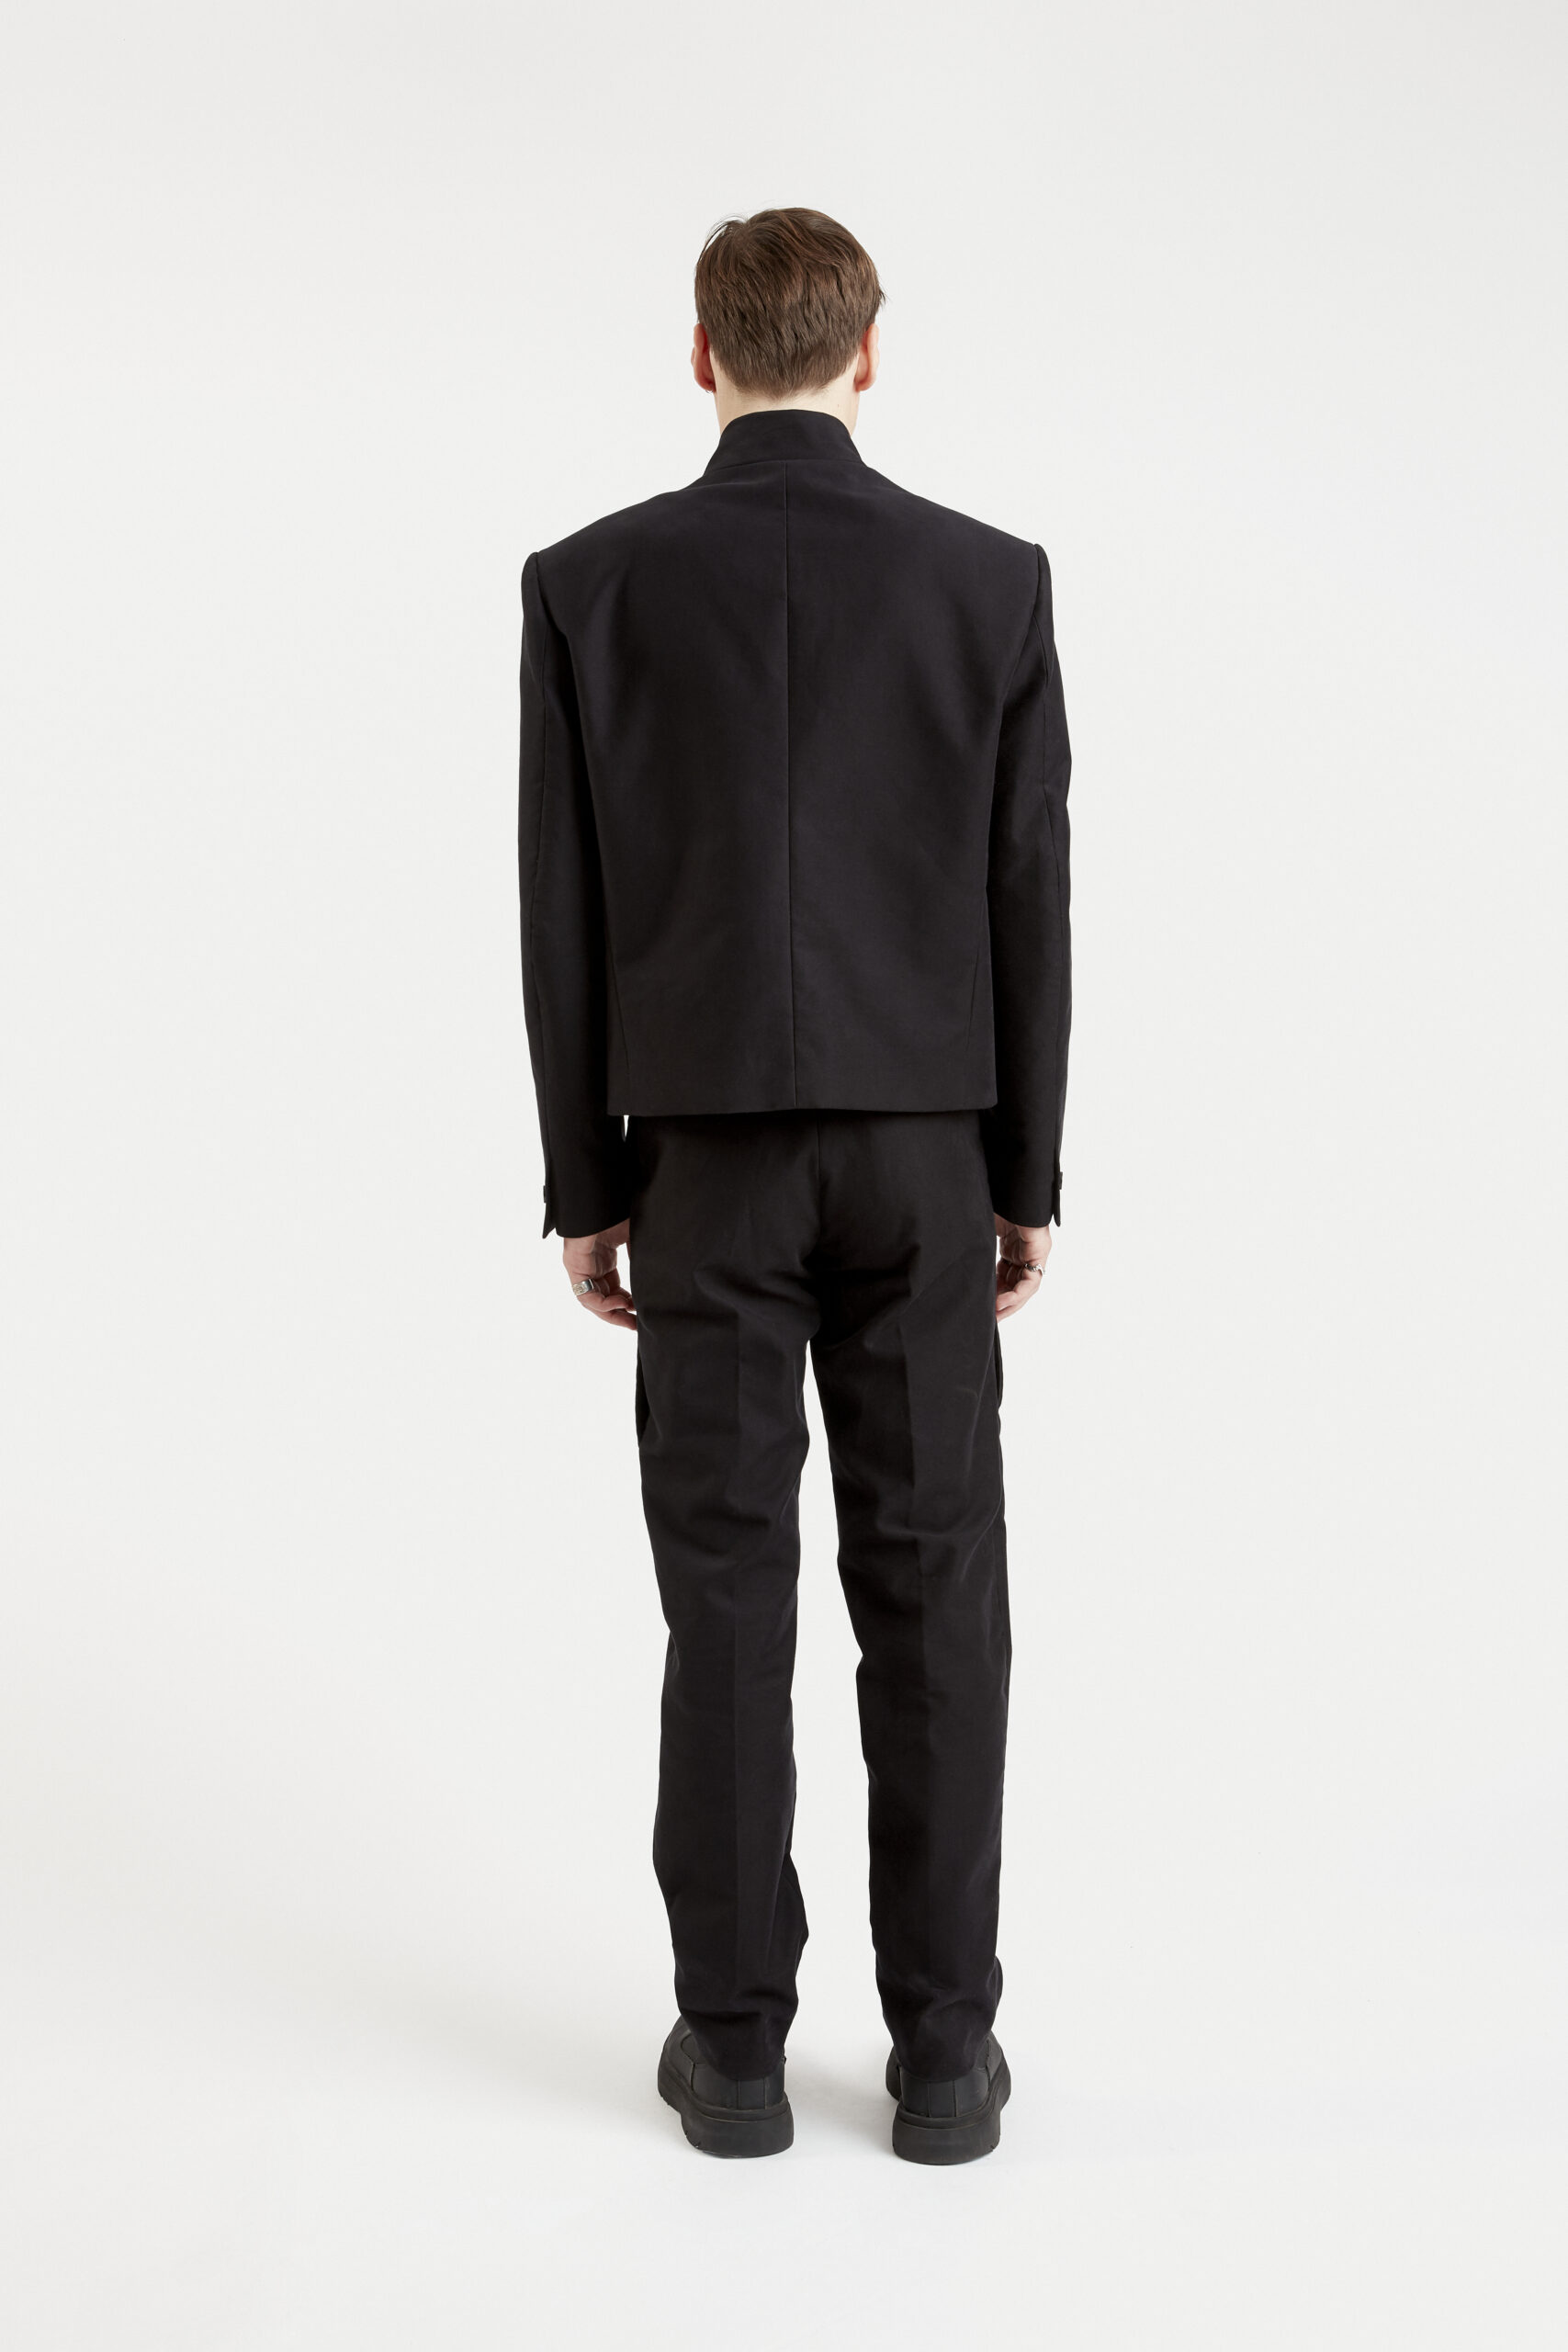 mizu-courte-veste-costume-col-officier-coton-japonais-noir-minimaliste-tendance-fashion-design-élégant-hiver-29thoctober